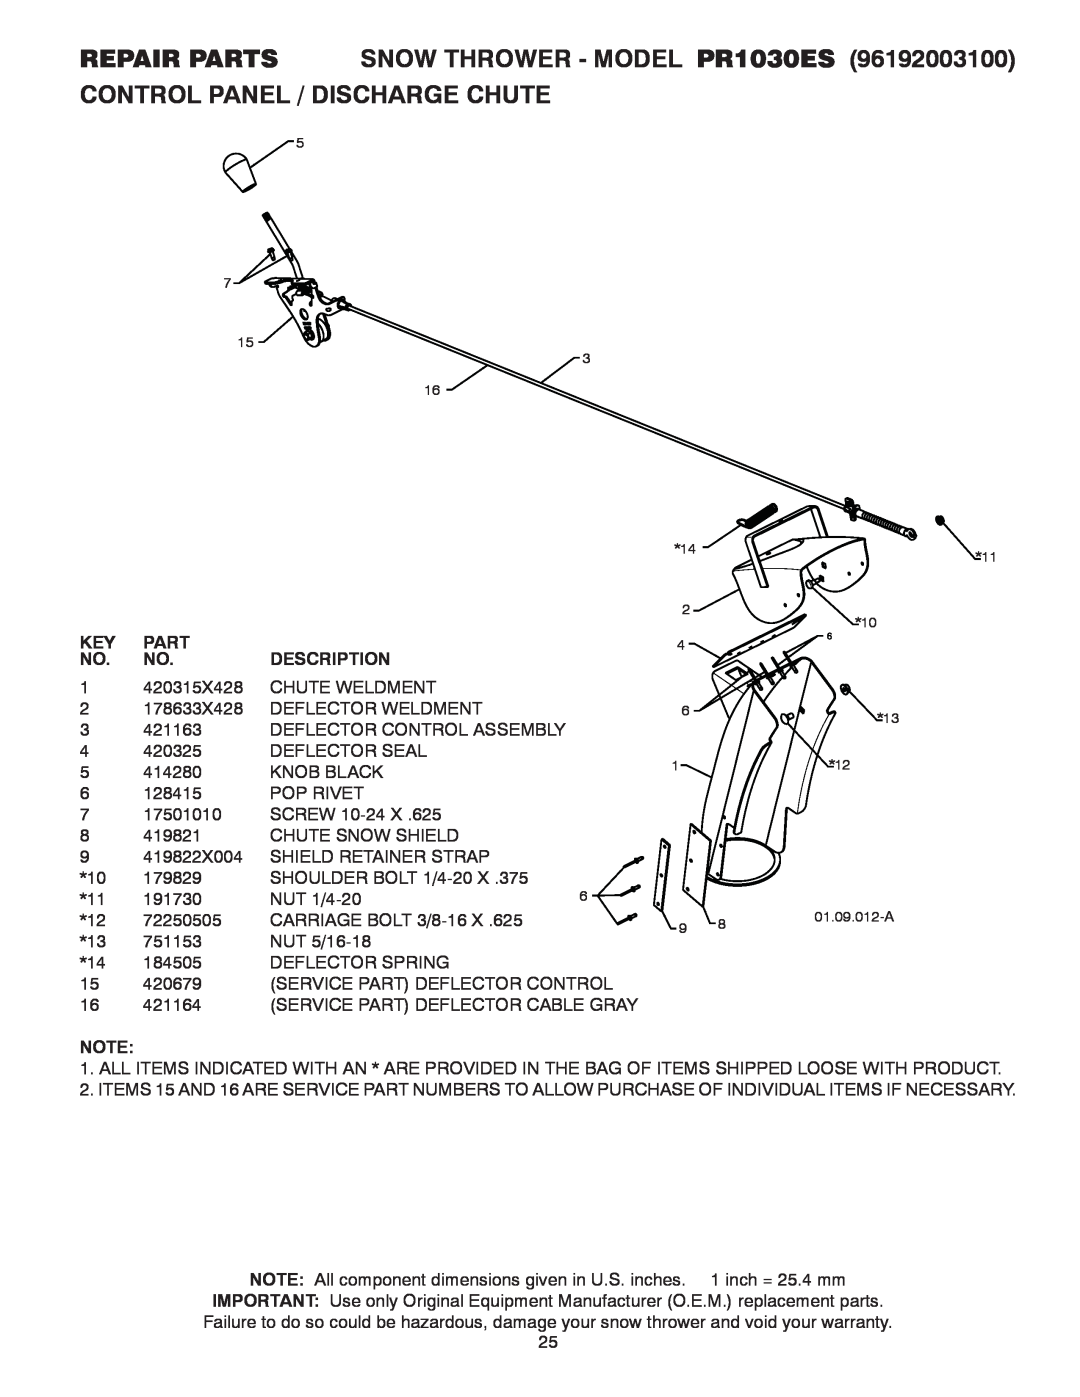 Poulan Control Panel / Discharge Chute, REPAIR PARTS SNOW THROWER - MODEL PR1030ES, Part, Description, 01.09.012-A 